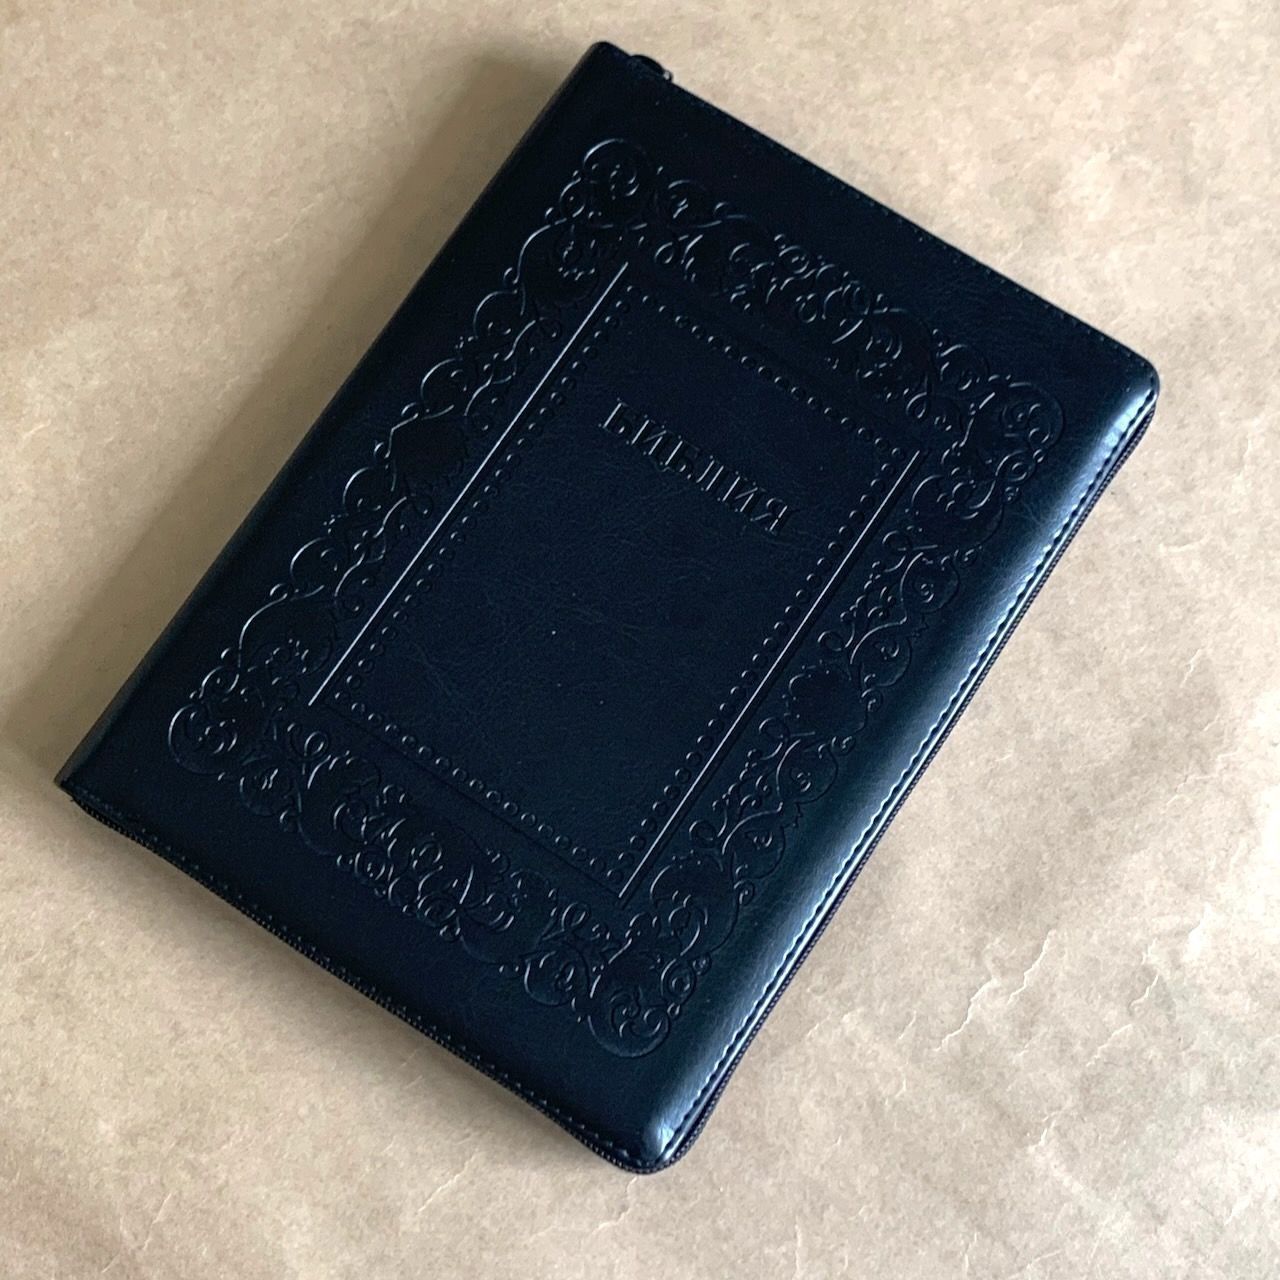 Библия 076zti код G6, дизайн "термо рамка барокко", переплет из искусственной кожи на молнии с индексами, цвет черный металлик, размер 180x243 мм